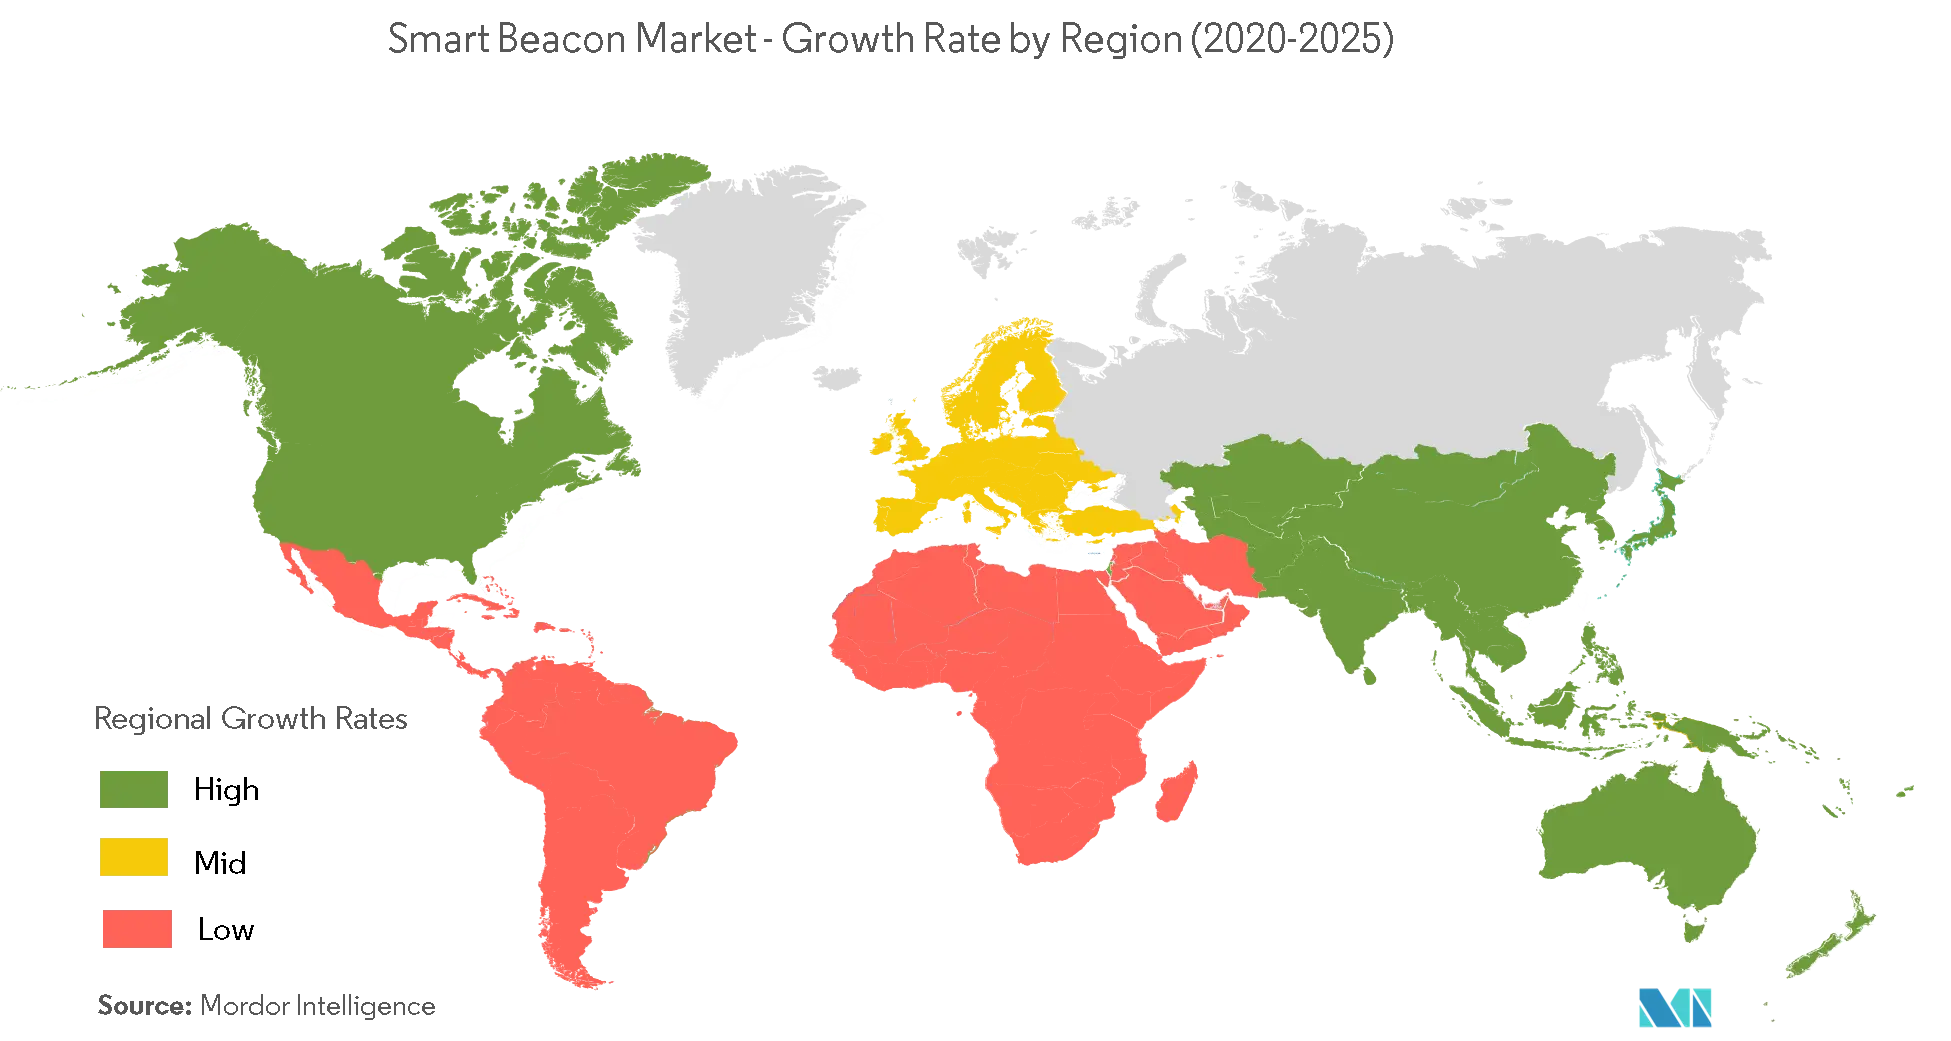  Smart Beacon Market Growth by Region